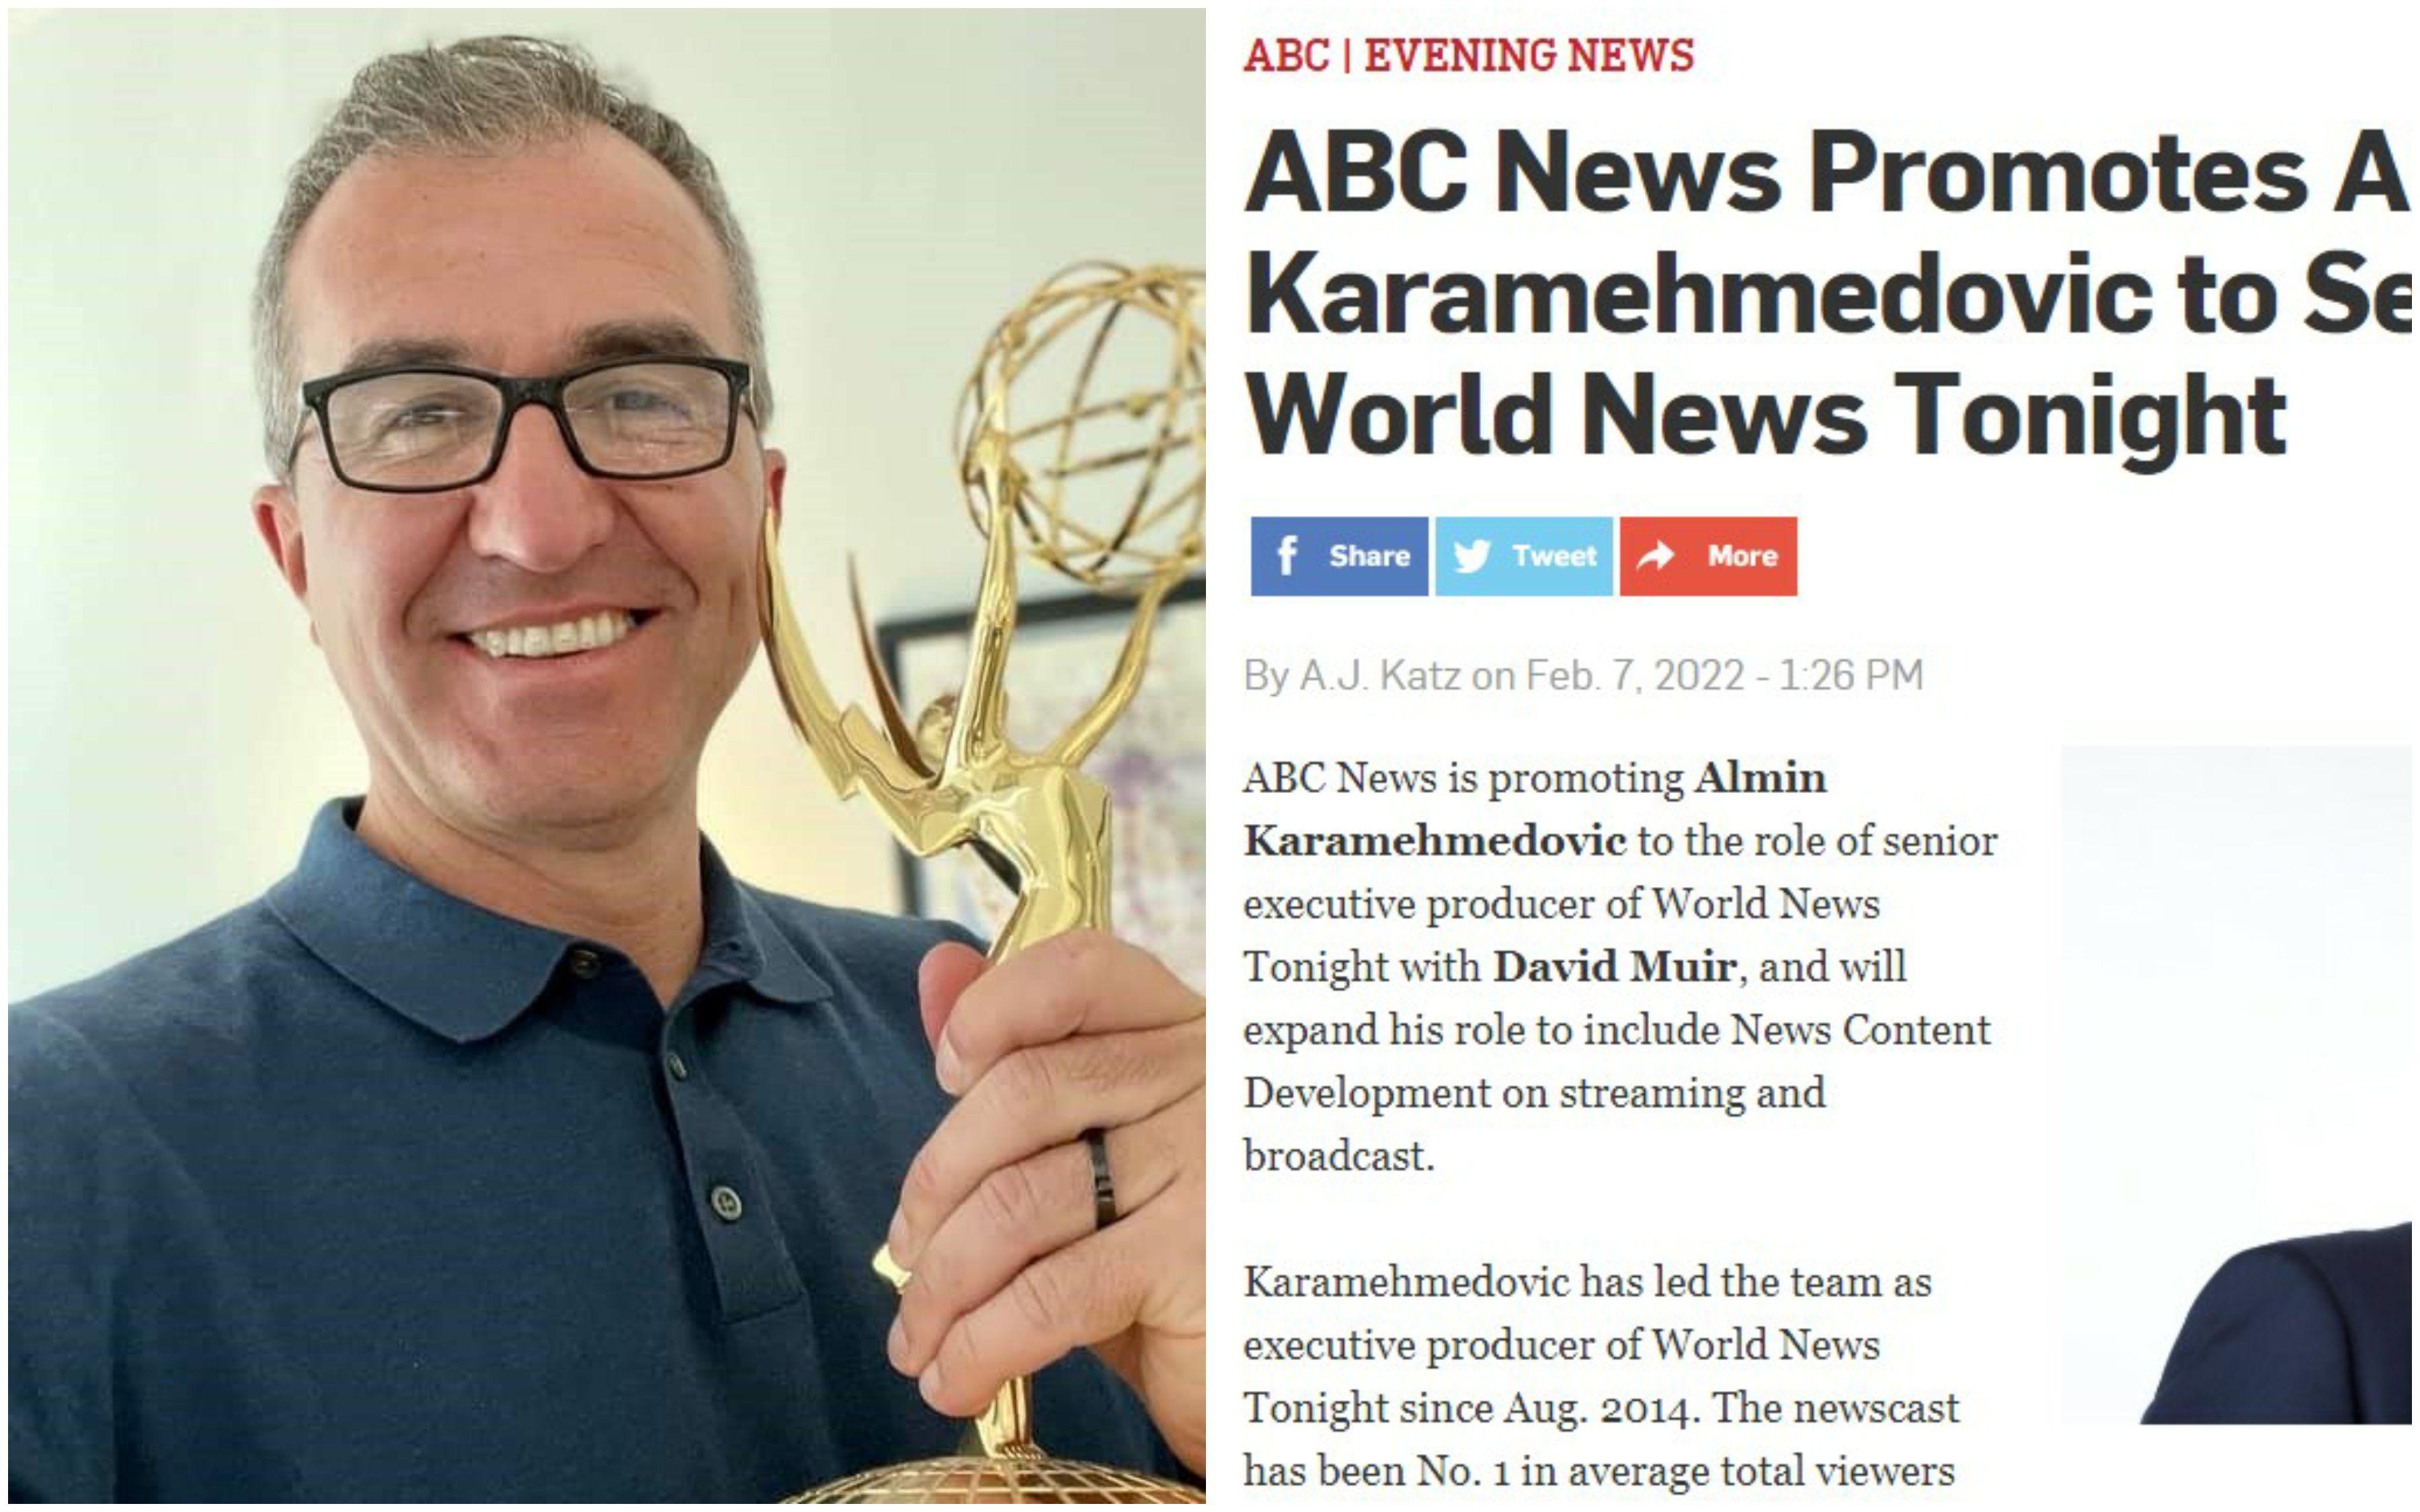 ABC News večeras promovira Almina Karamehmedovića u višeg izvršnog producenta "World Newsa" - Avaz